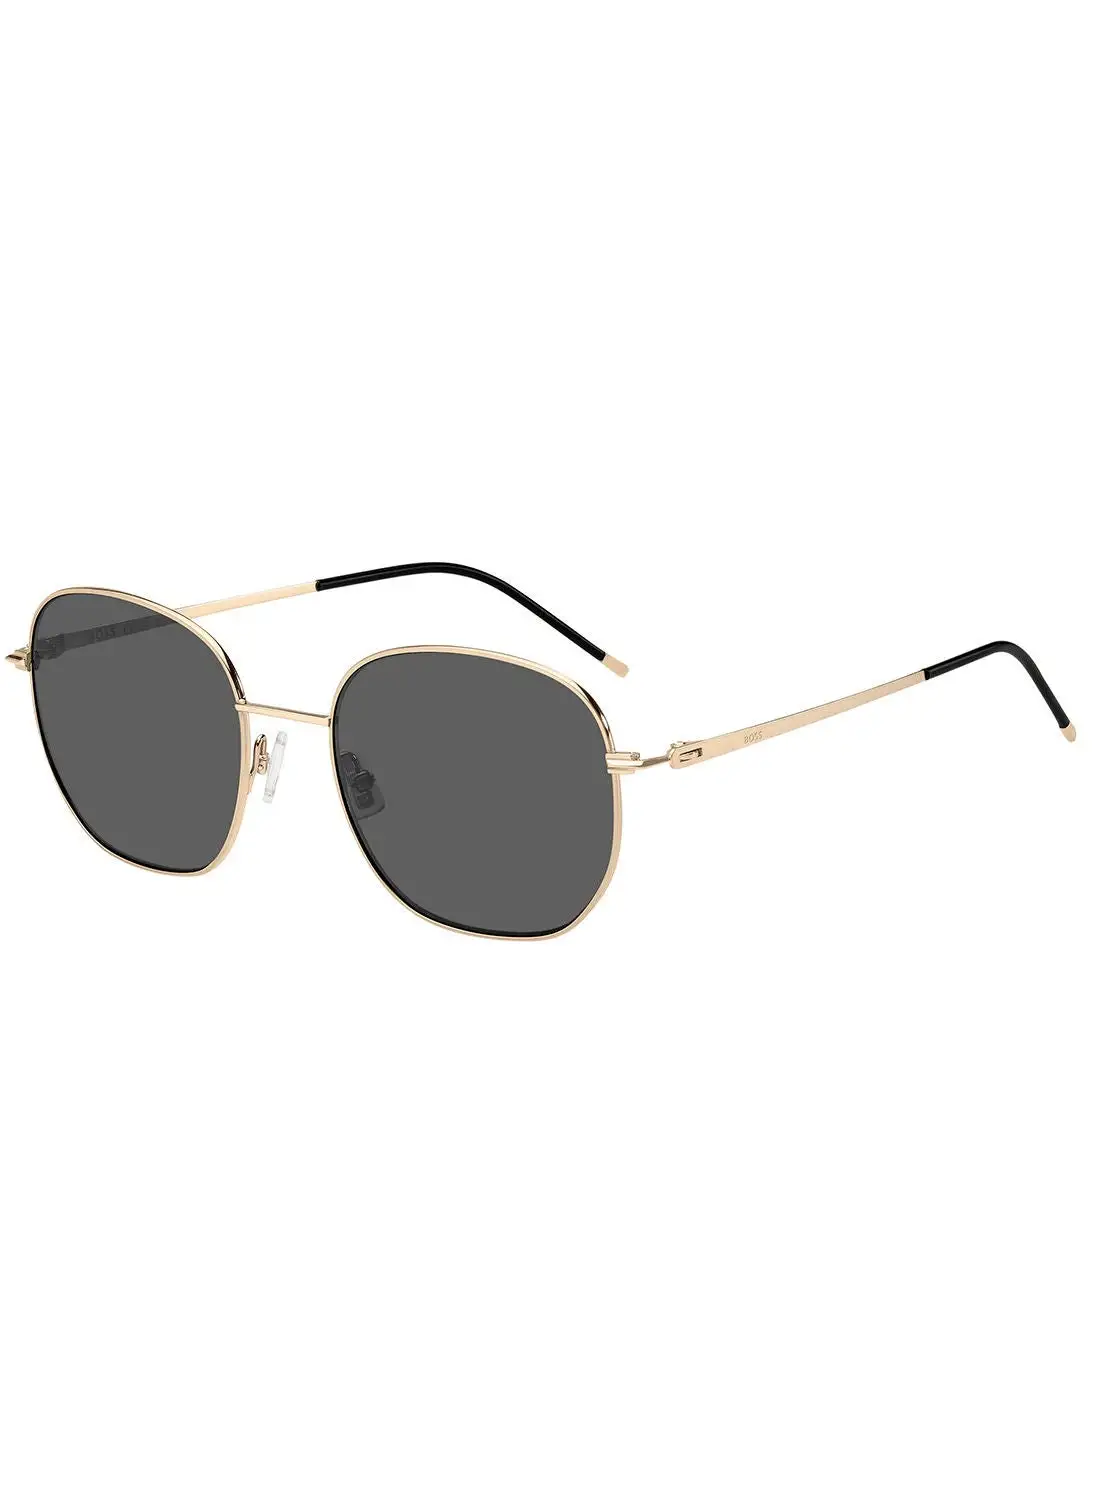 HUGO BOSS Women's UV Protection Octagonal Sunglasses - Boss 1462/S Rose Gold 54 - Lens Size: 54 Mm